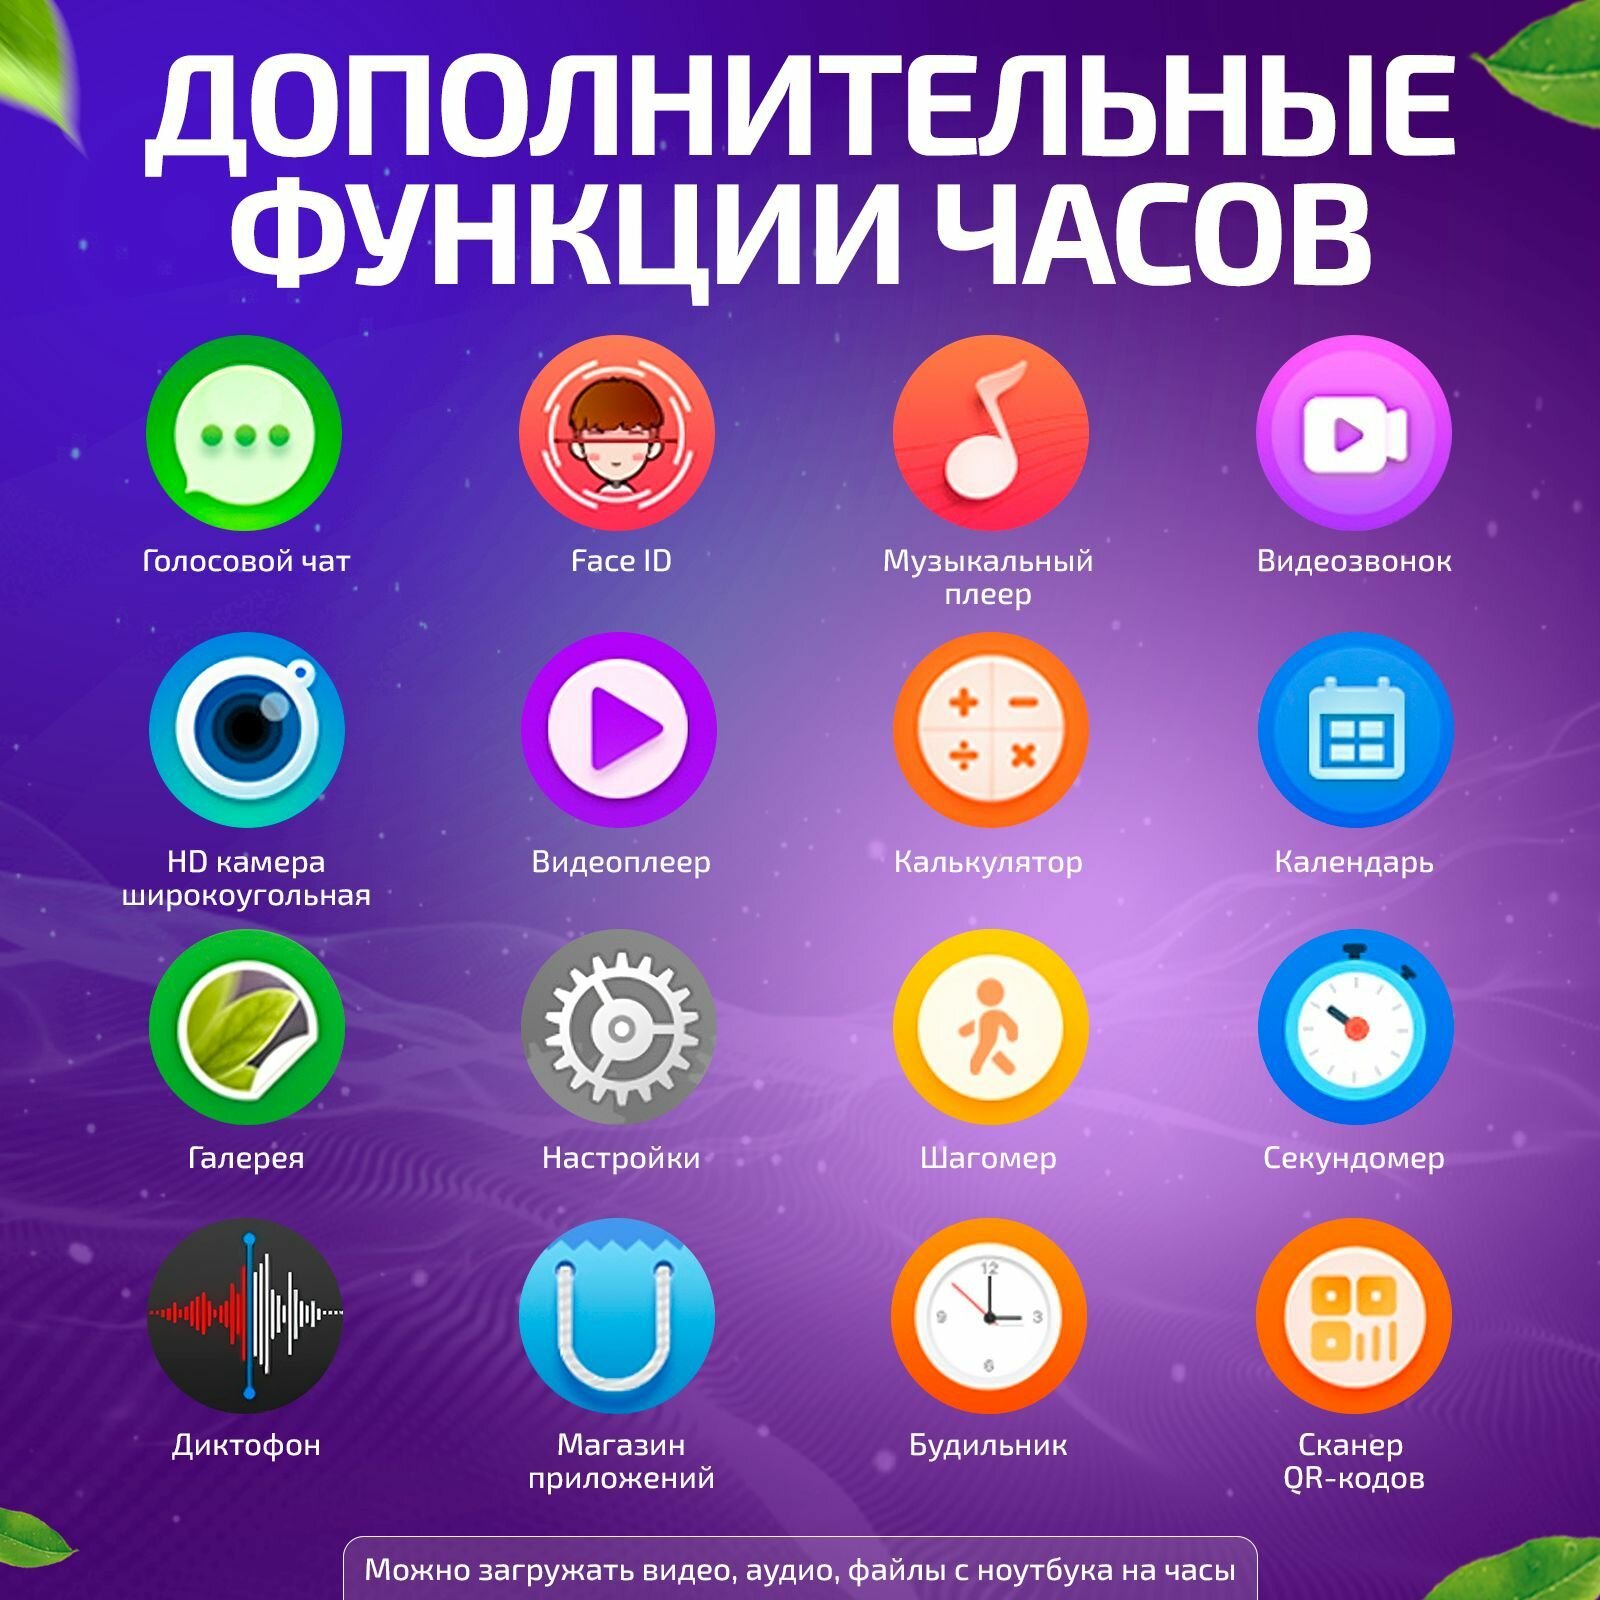 Часы для школьников Tiroki TRK-13 Android 81 с TikTok YouTube телефоном 4G GPS и видеозвонком  кнопка SOS видеоплеер аудиоплеер